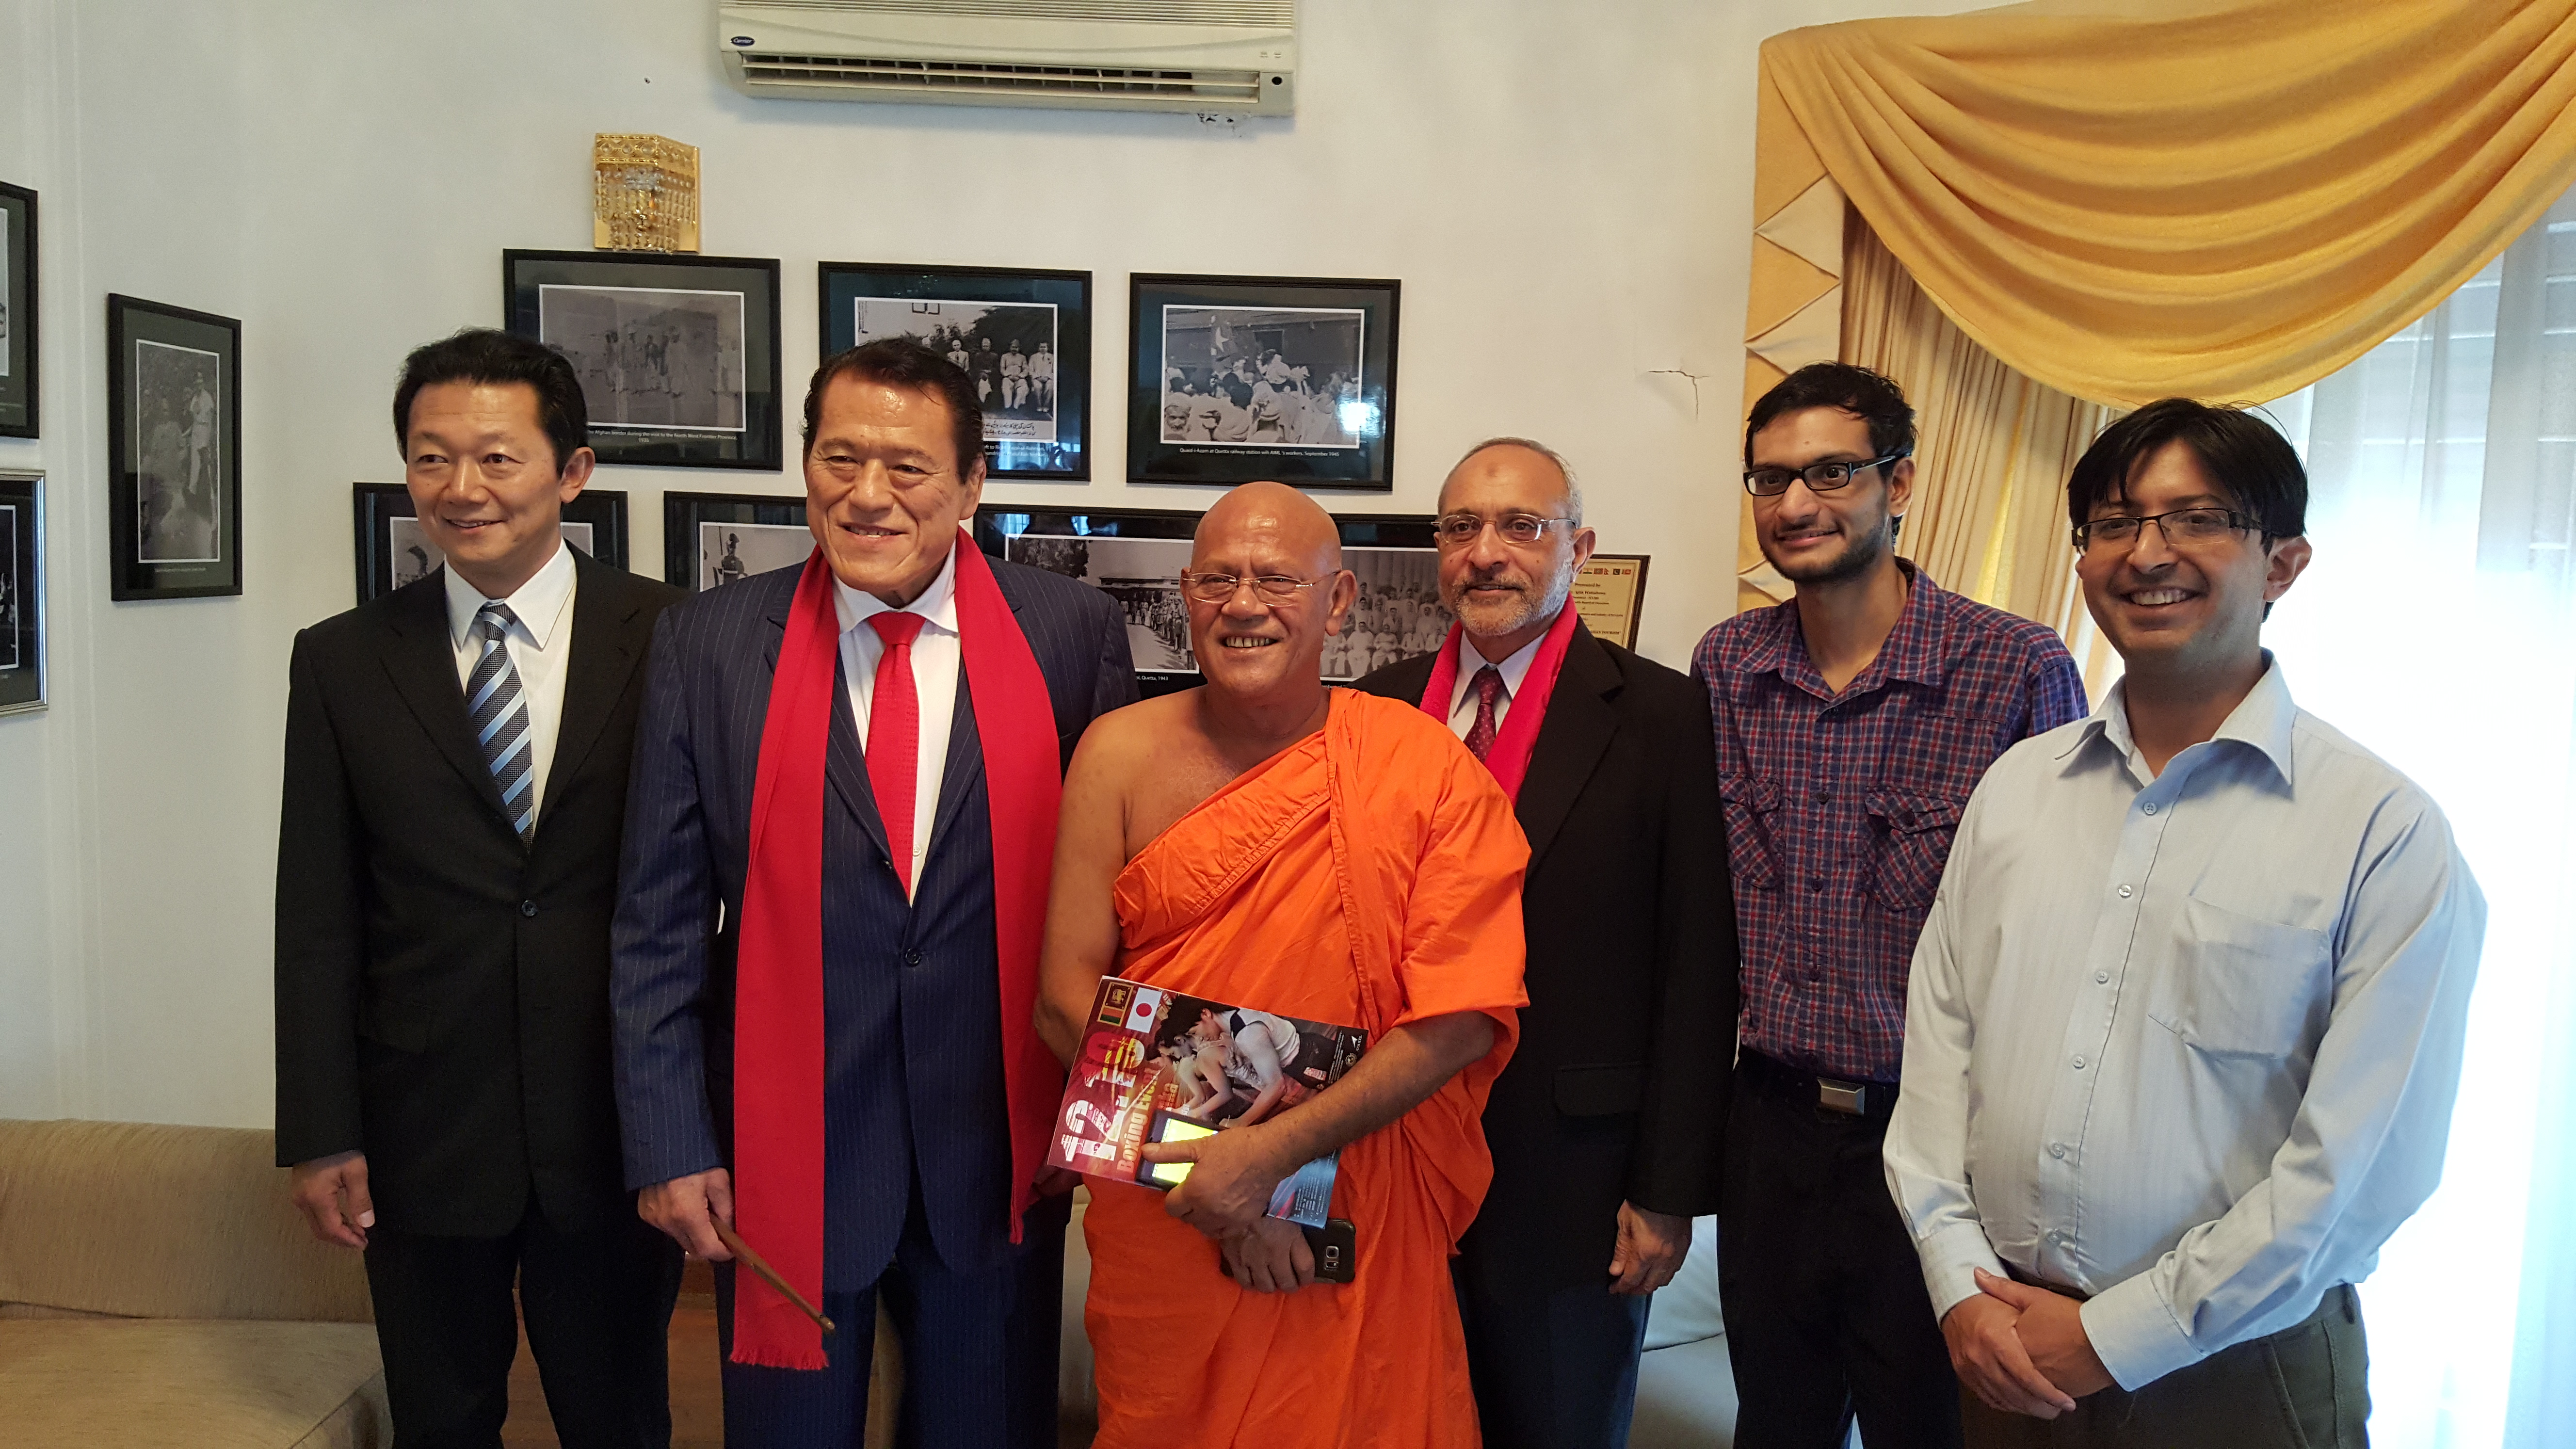 Legendary Japanese Wrestler Inoki meets Pak Envoy in Colombo